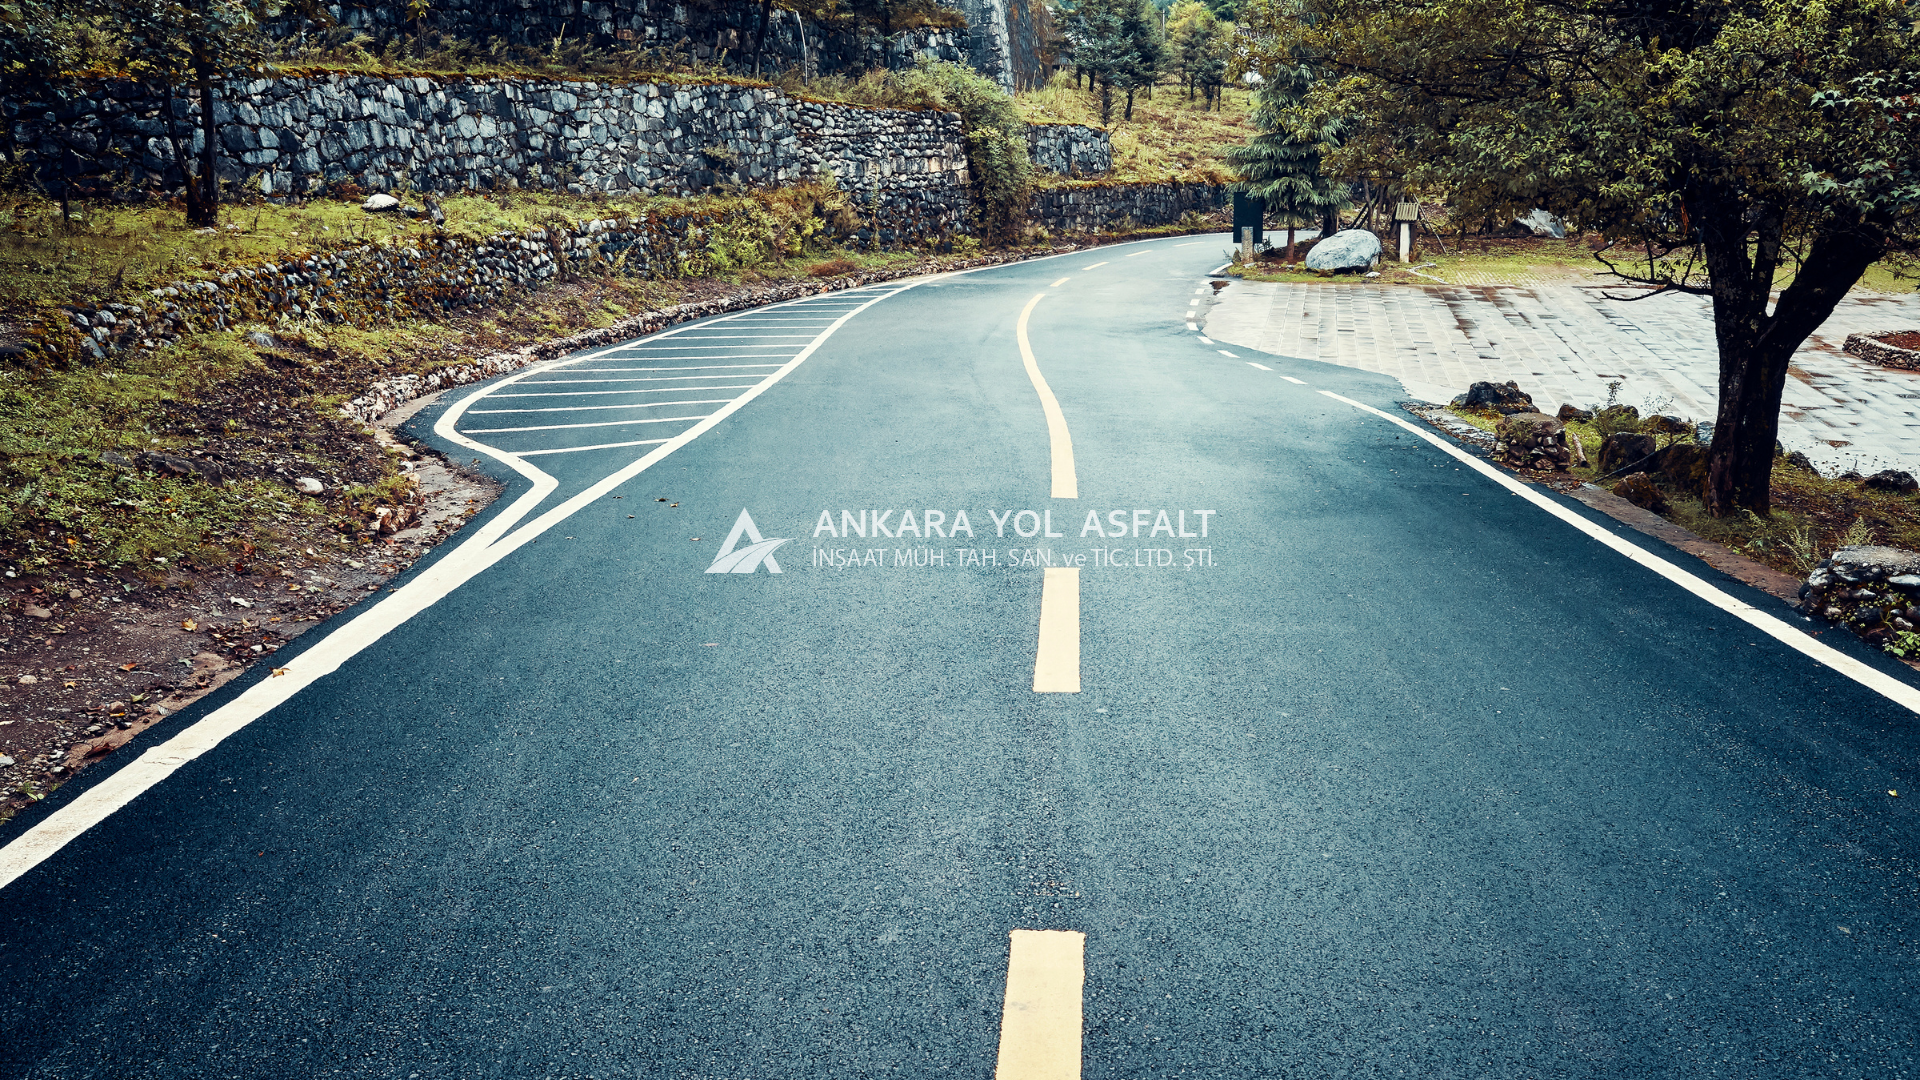 Ankara Asfalt Yol İşaretlemesinde Renk Seçimi ve Anlamı Nedir?